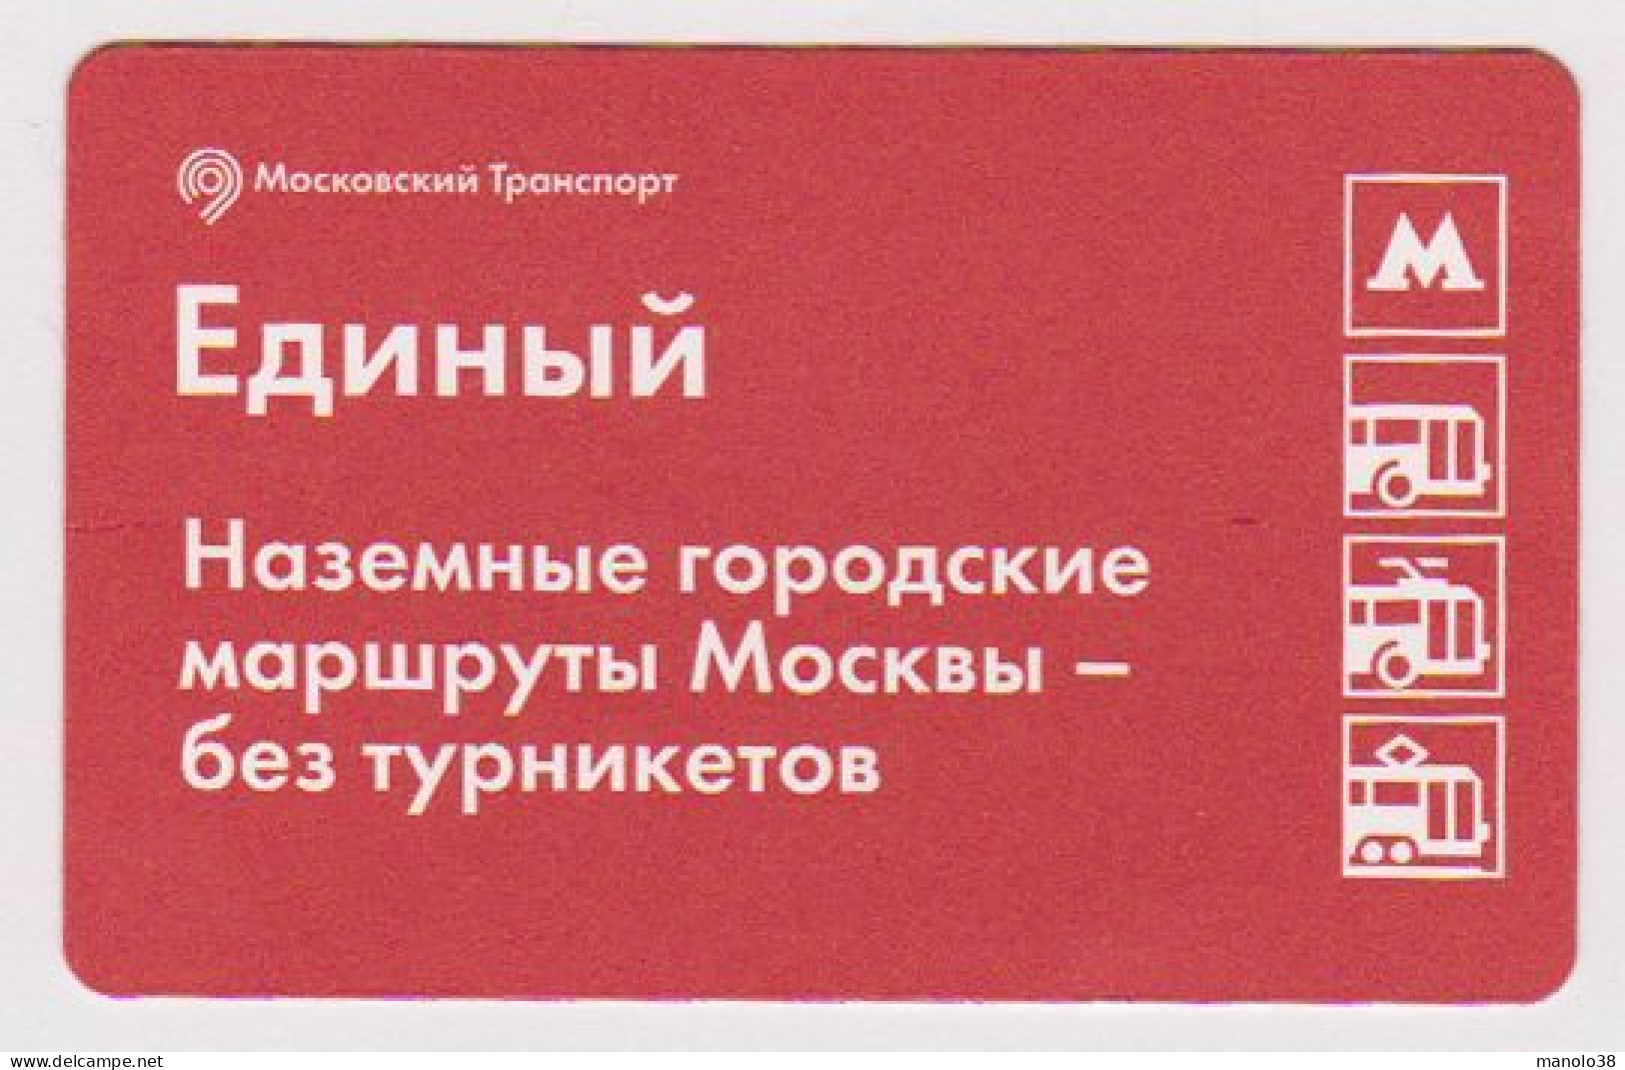 Carte Pour Les Transports En Commun De Moscou. Russie. Metro, Bus, Tramway ... - Welt